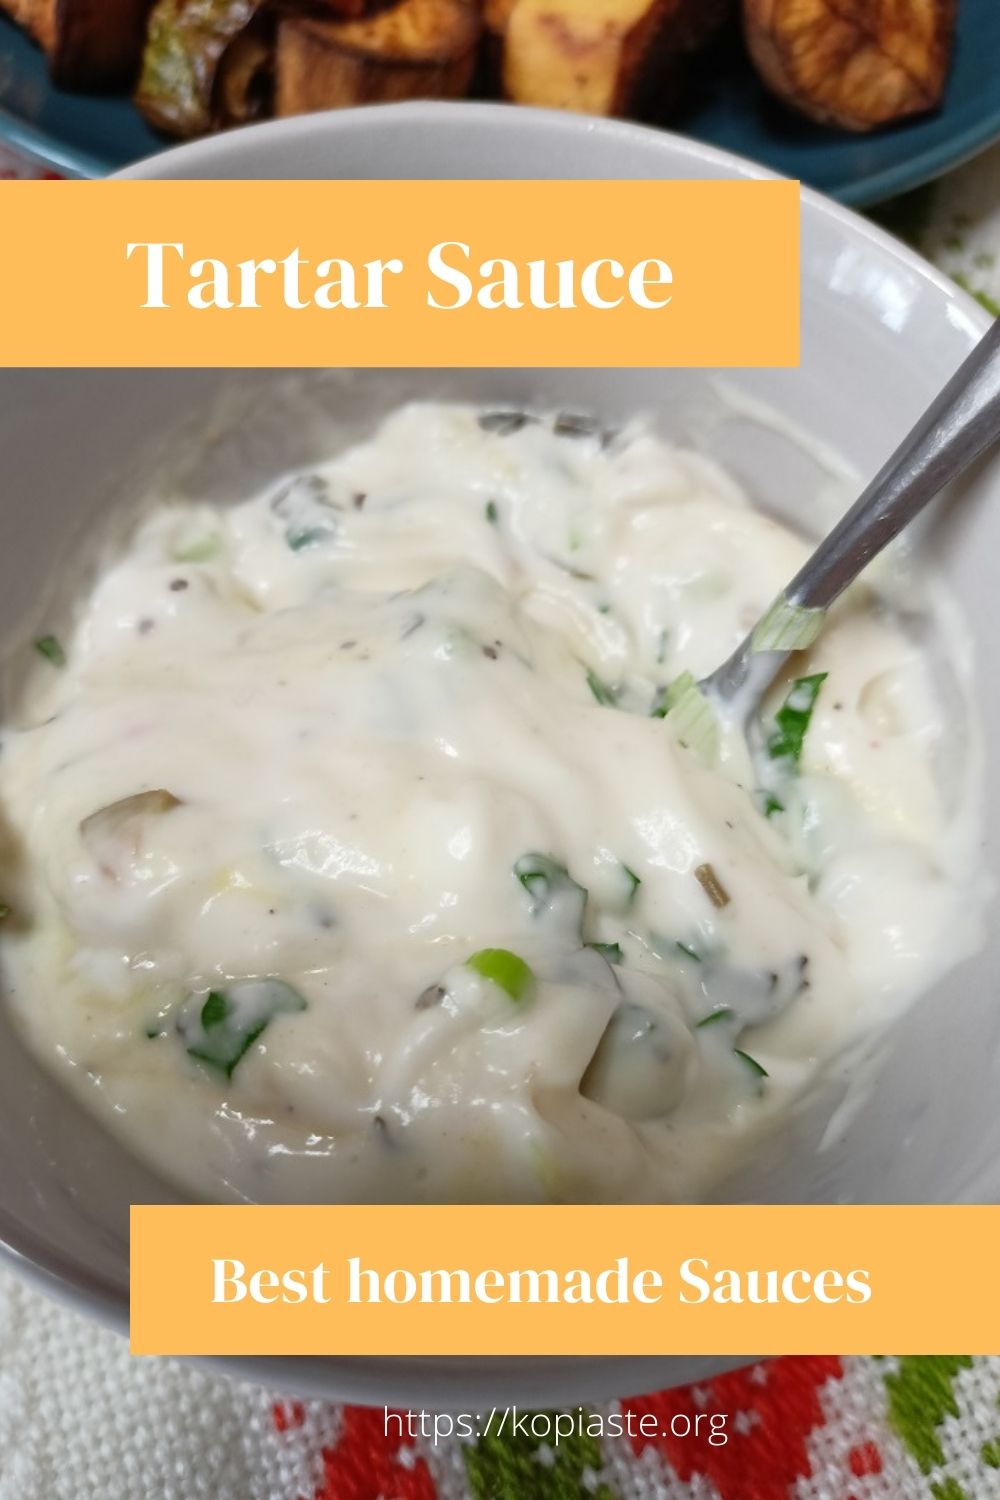 How to make tartar sauce